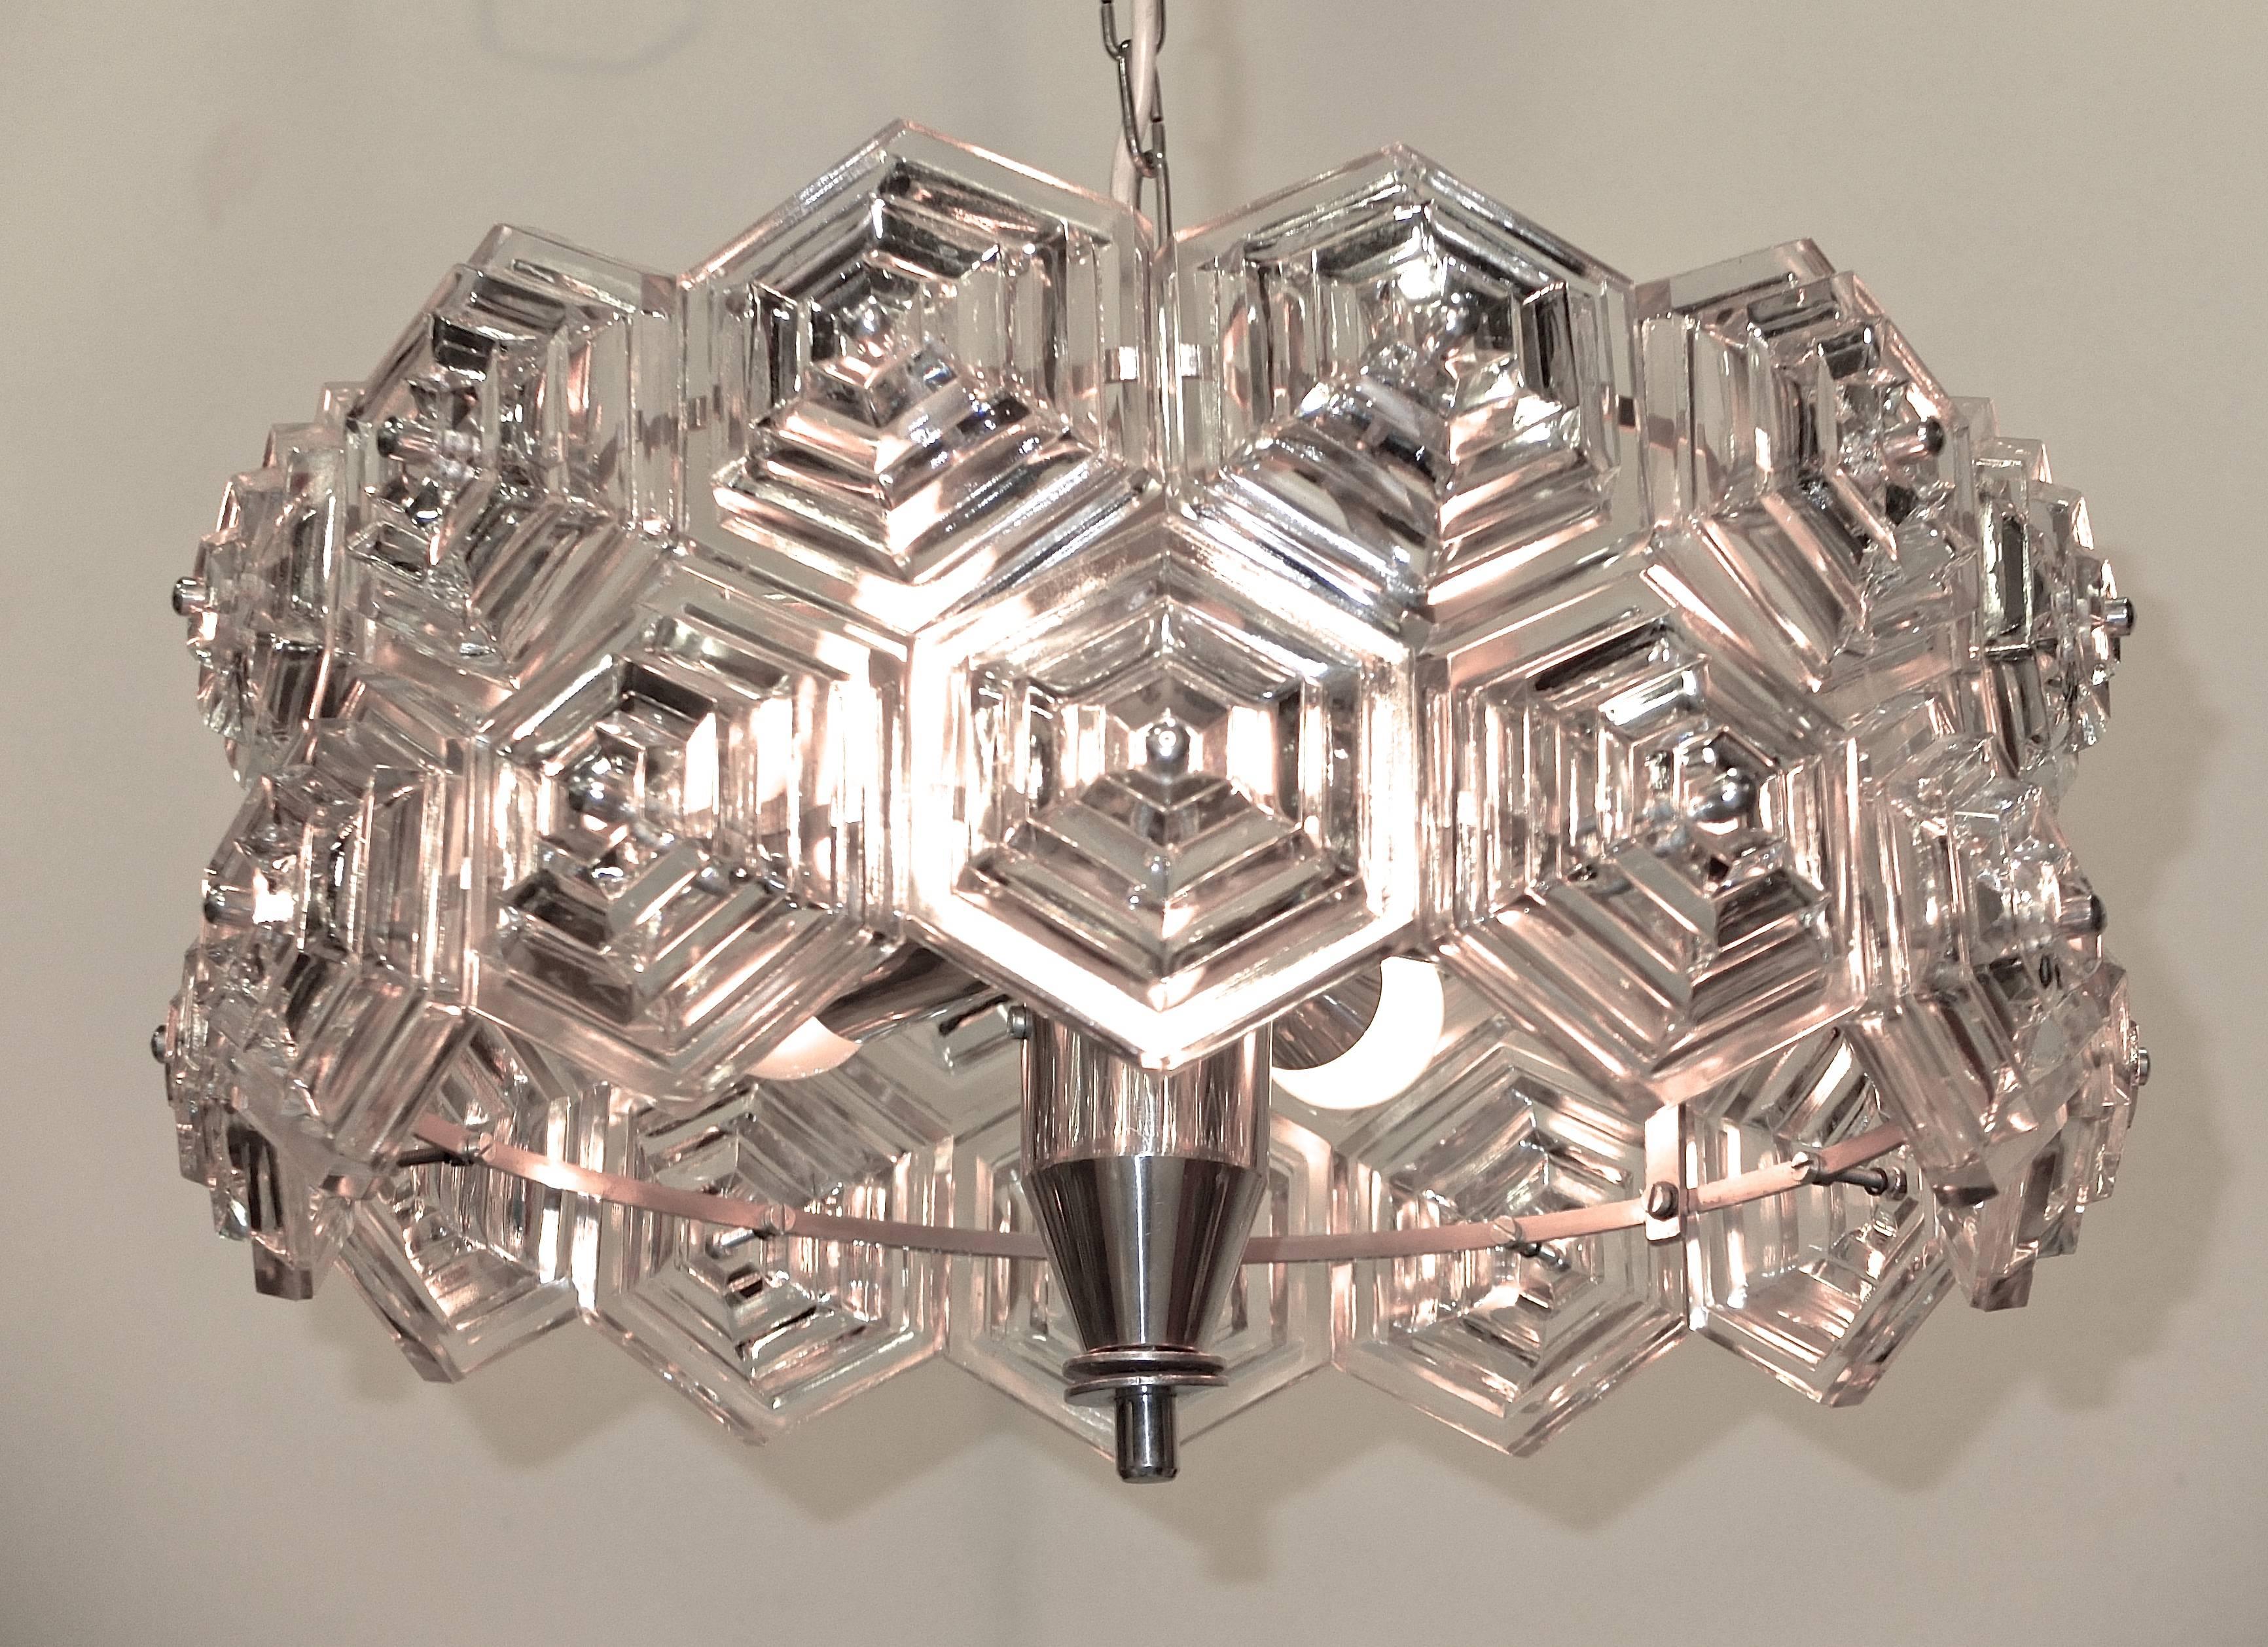 kristall-Hängeleuchte oder Unterputzleuchte aus den 1960er Jahren, hergestellt vom VEB Kristalleuchte in der DDR, mit gestuften sechseckigen Glasprismen auf einem Chromrahmen.

Neu verdrahtet / Nimmt sechs Kandelaberglühbirnen mit jeweils bis zu